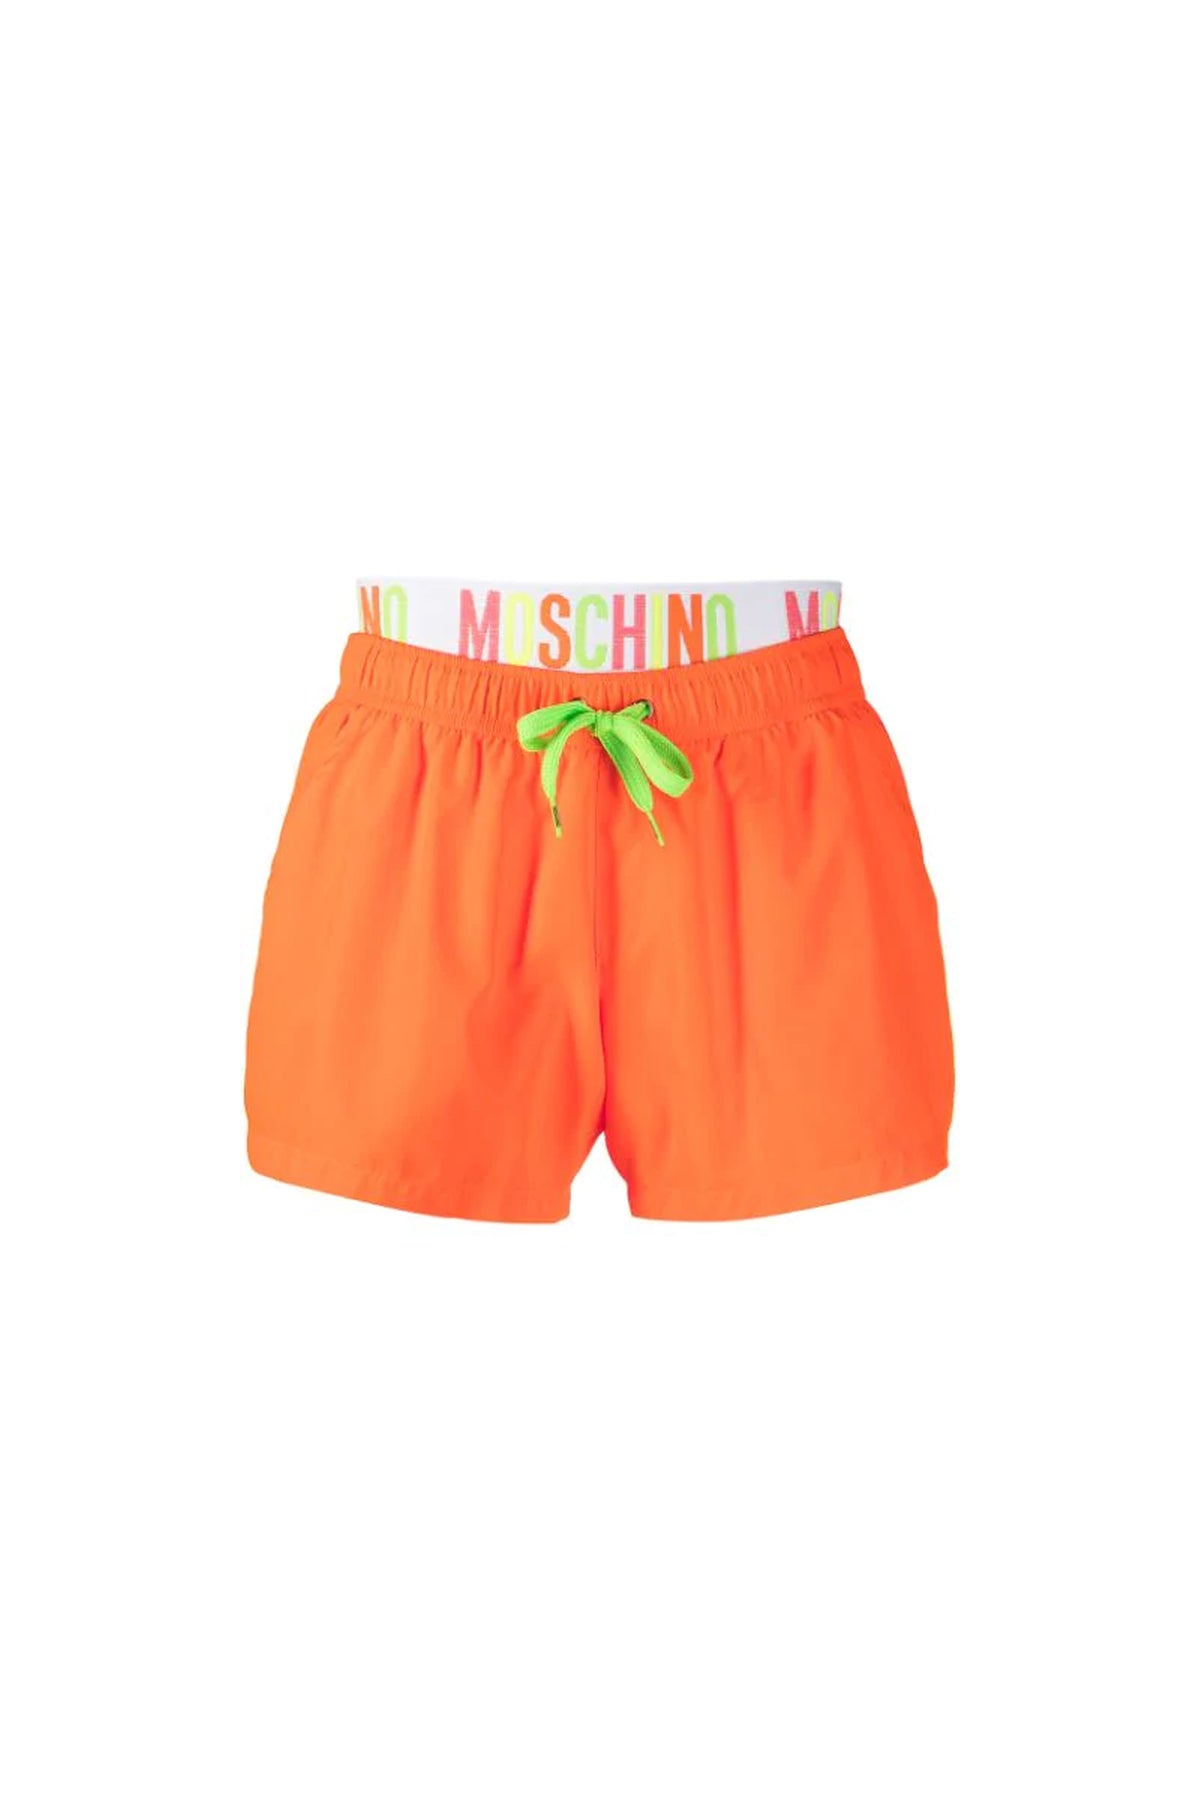 Moschino logo orange tape swimming shorts